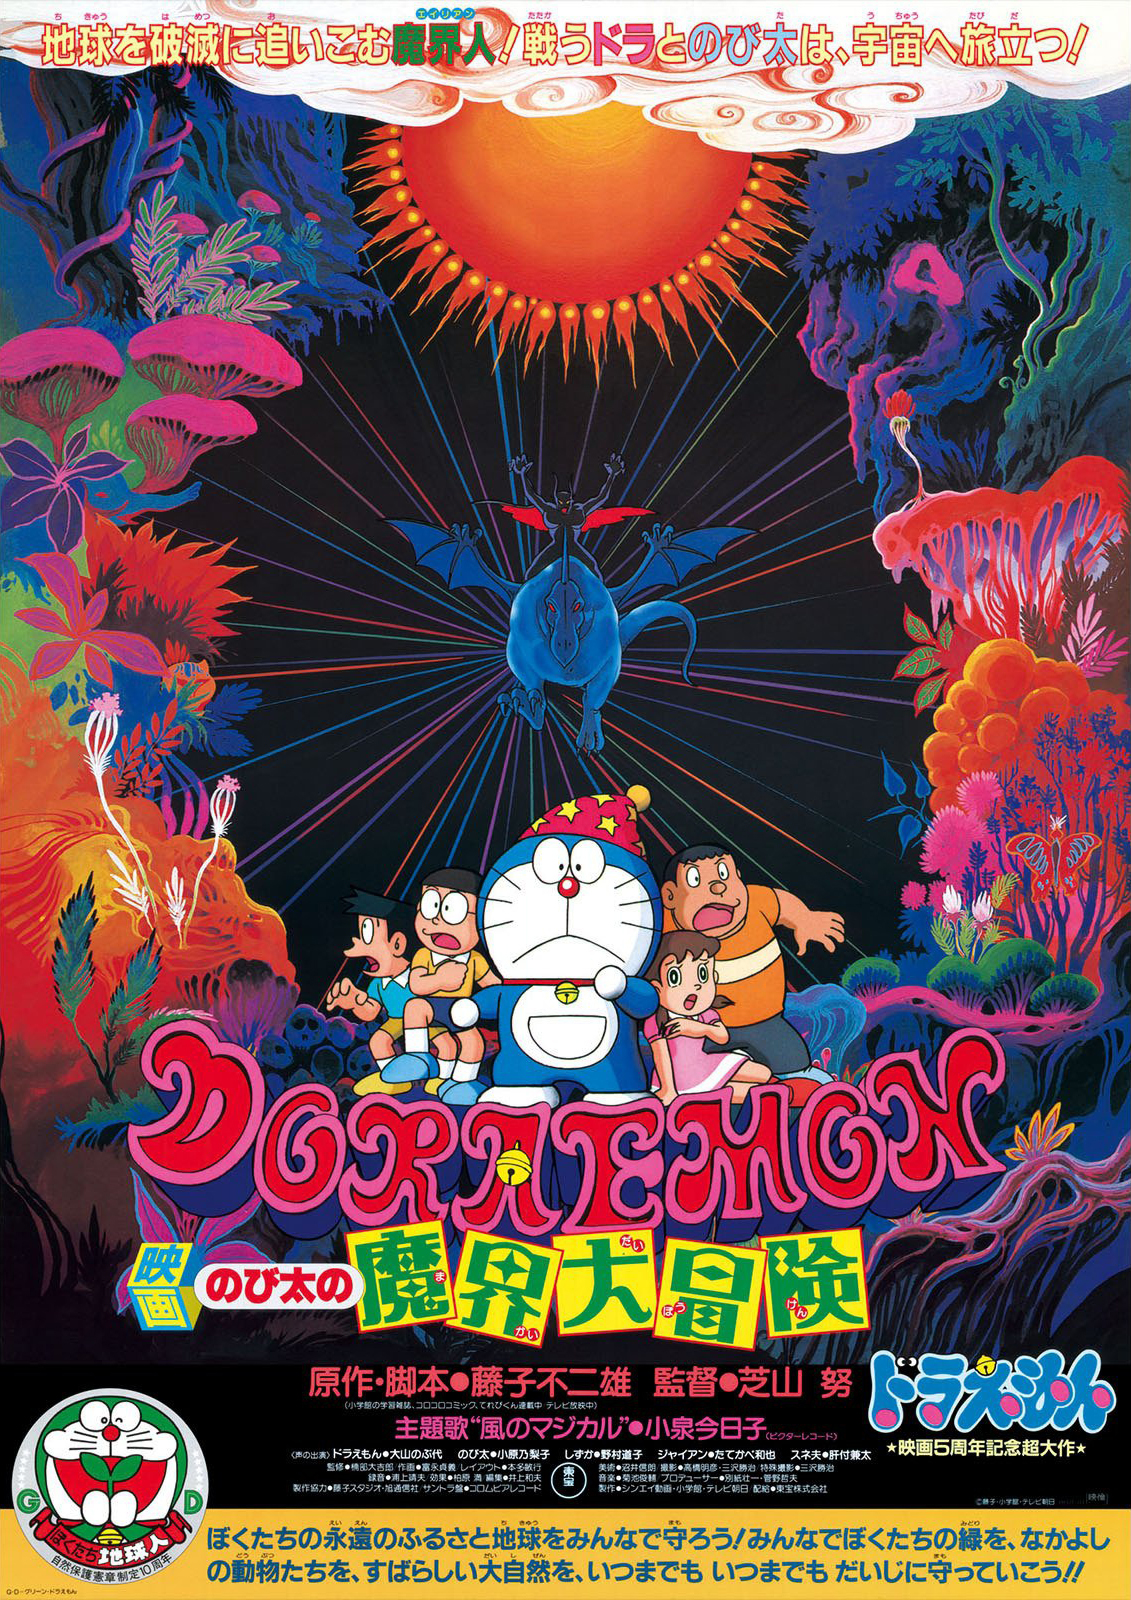 ดูหนังออนไลน์ฟรี Doraemon The Movie (1984) โดราเอมอนเดอะมูฟวี่ ตอน โนบิตะท่องแดนเวทมนต์